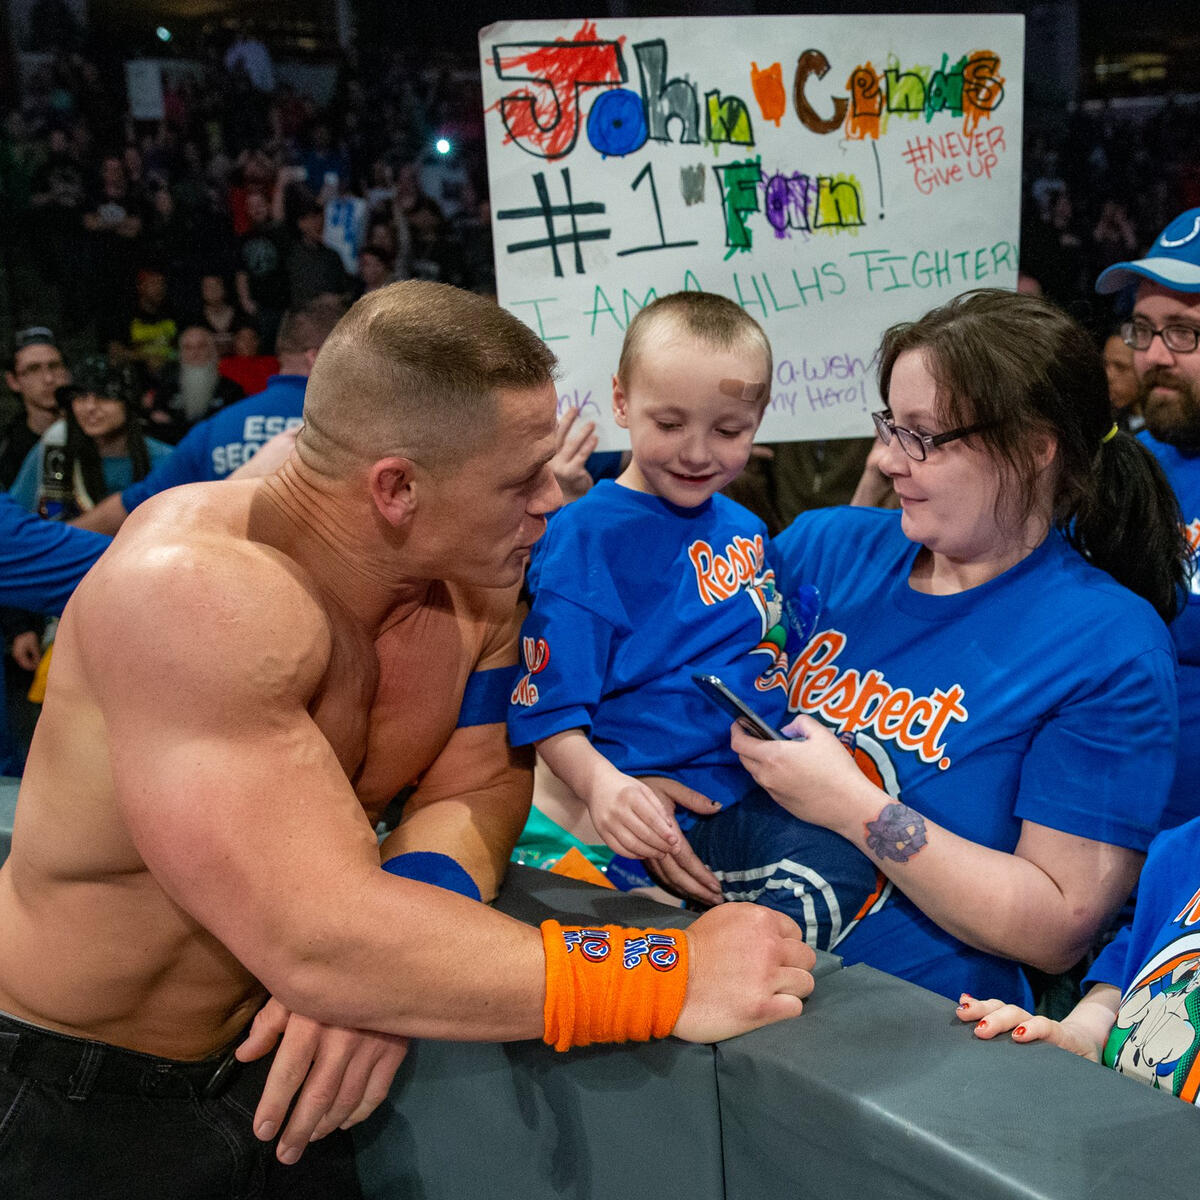 John Cena and the WWE photos WWE